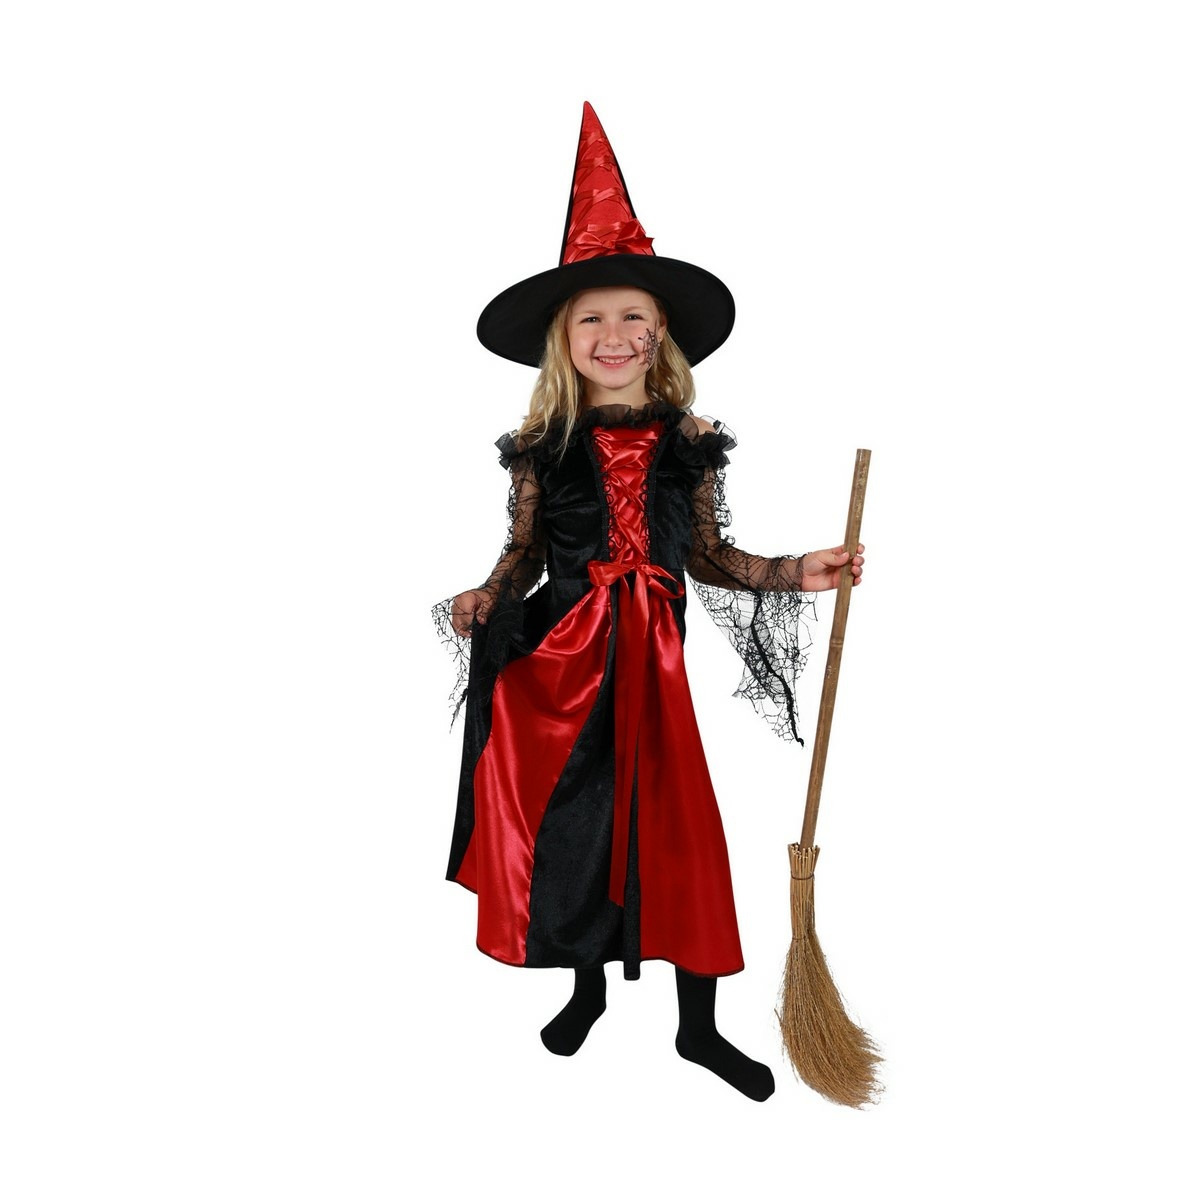 Rappa Detský kostým Čarodejnica s klobúkom čierno-červená, veľ. S